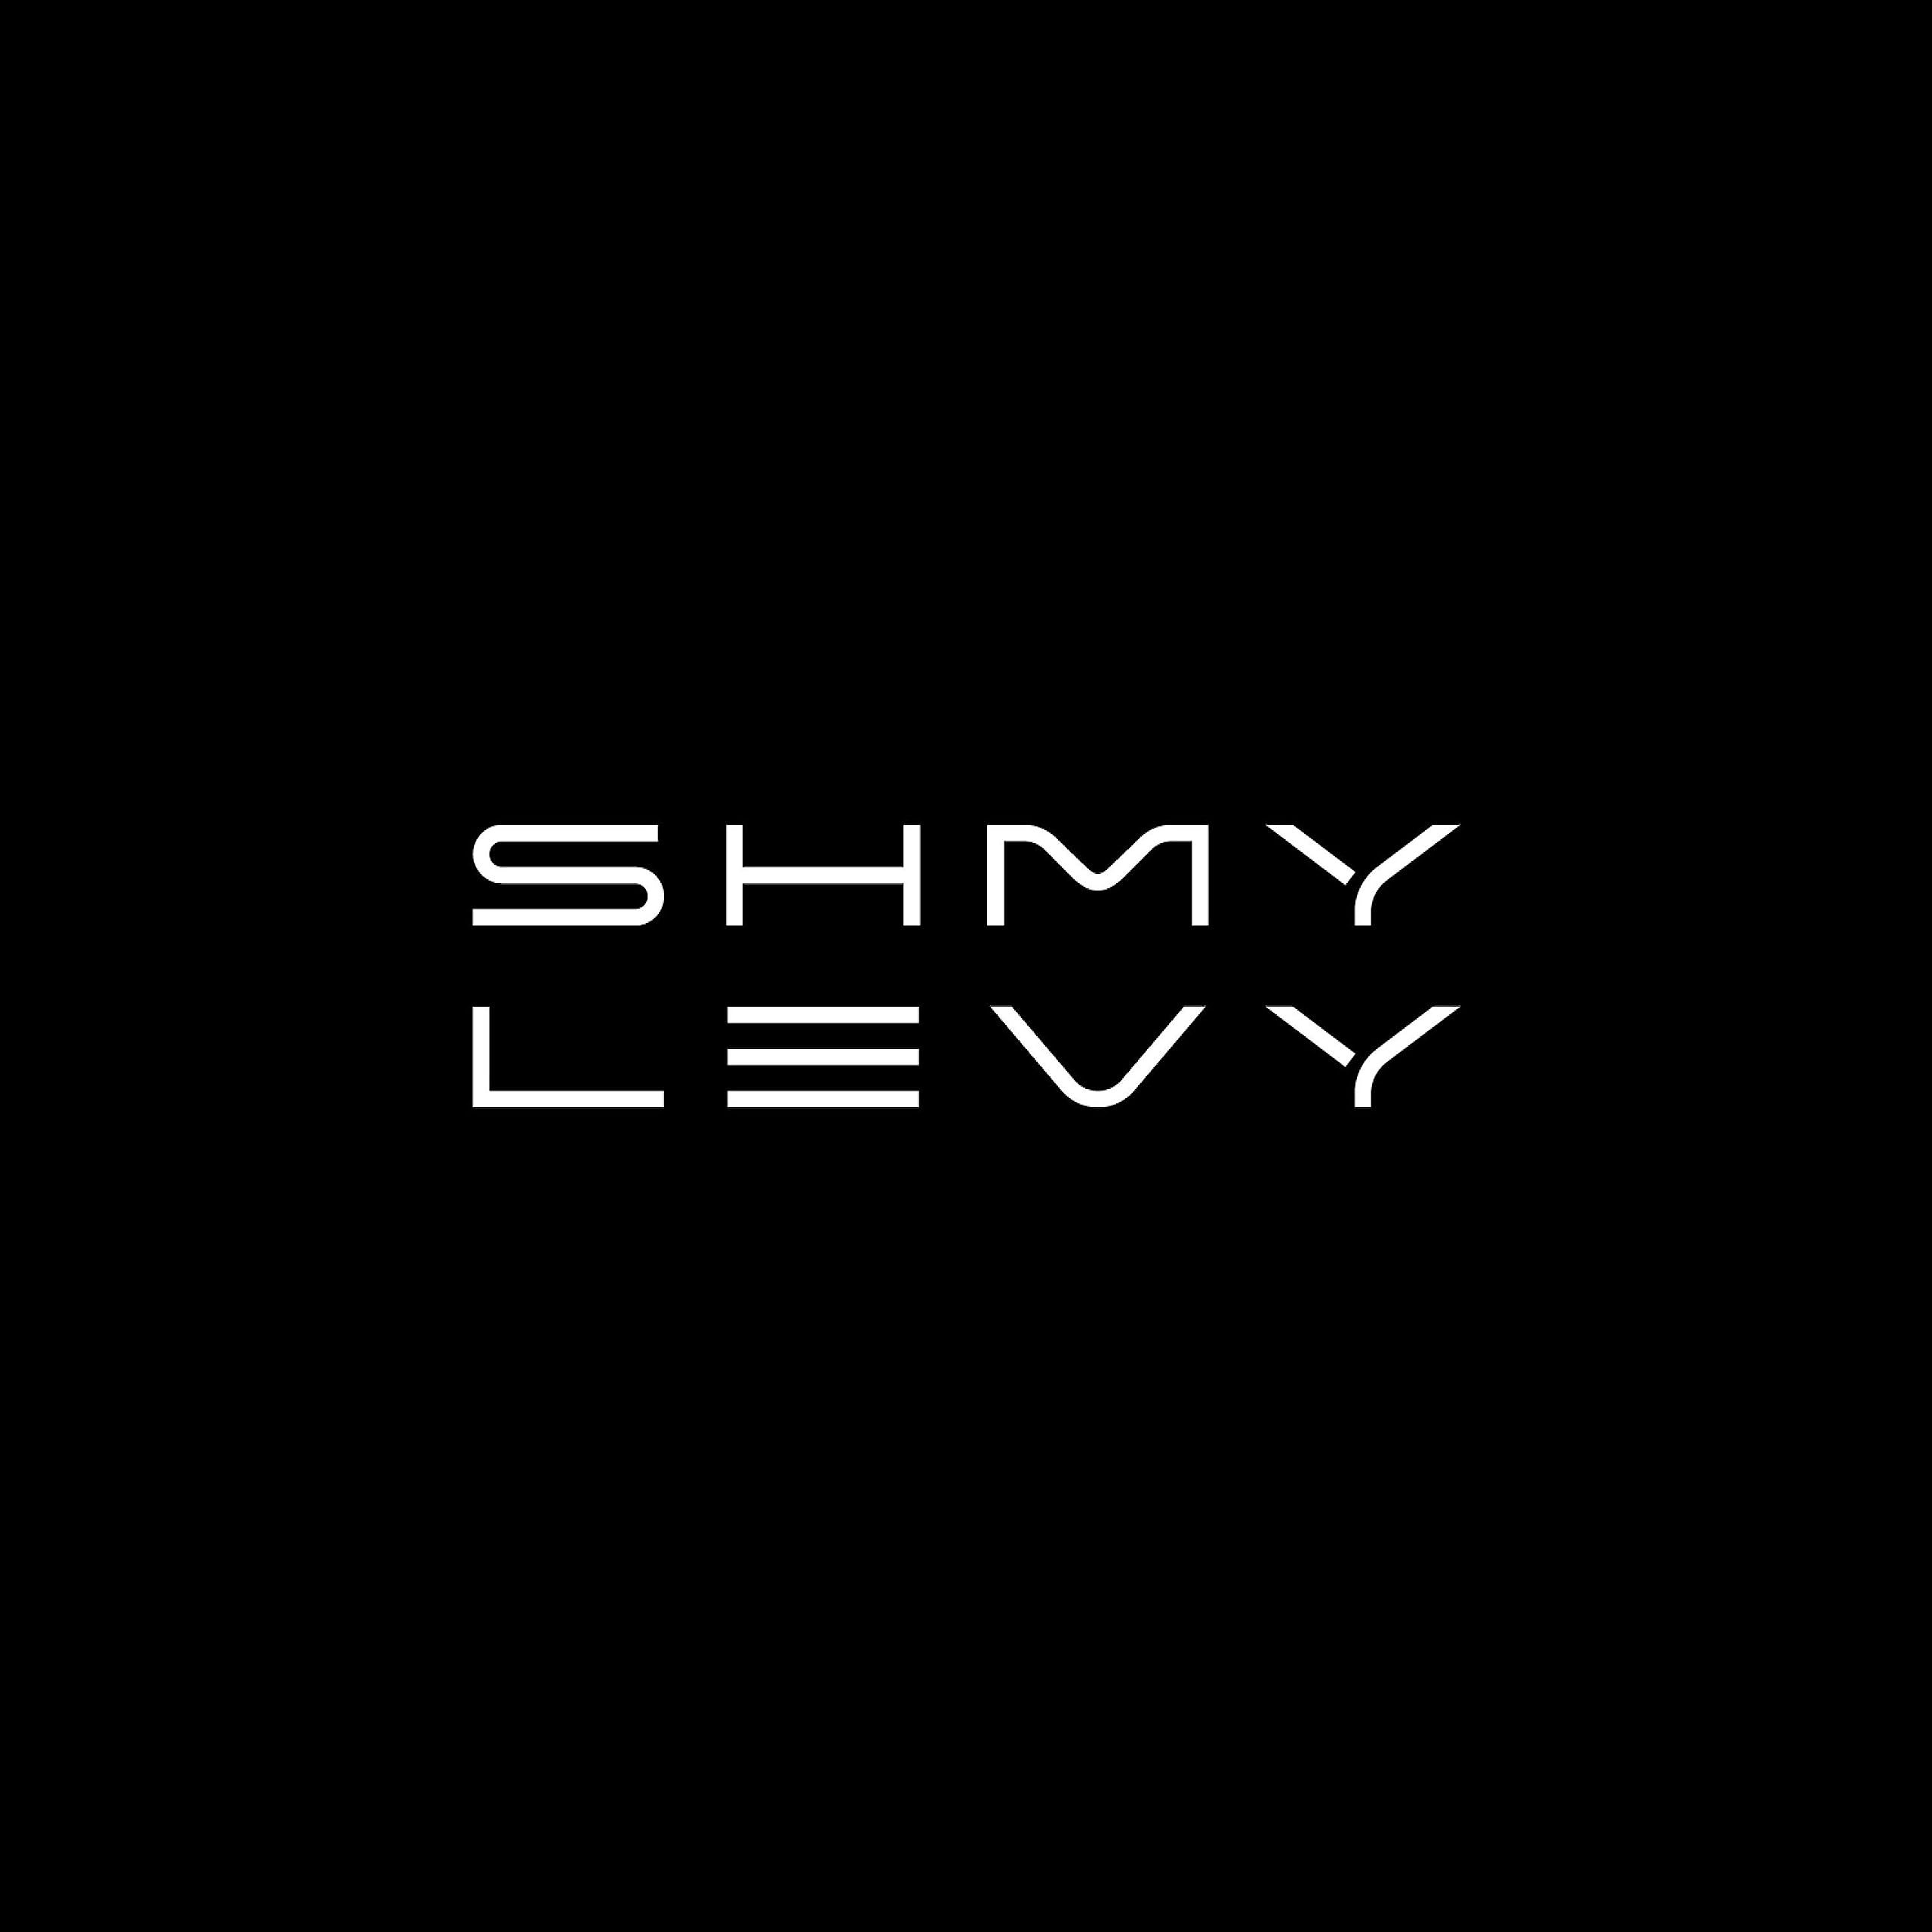 Yidi Bialostozky &amp; Shimmy Levy Production הפקה 14 ביוני 23' שכטר